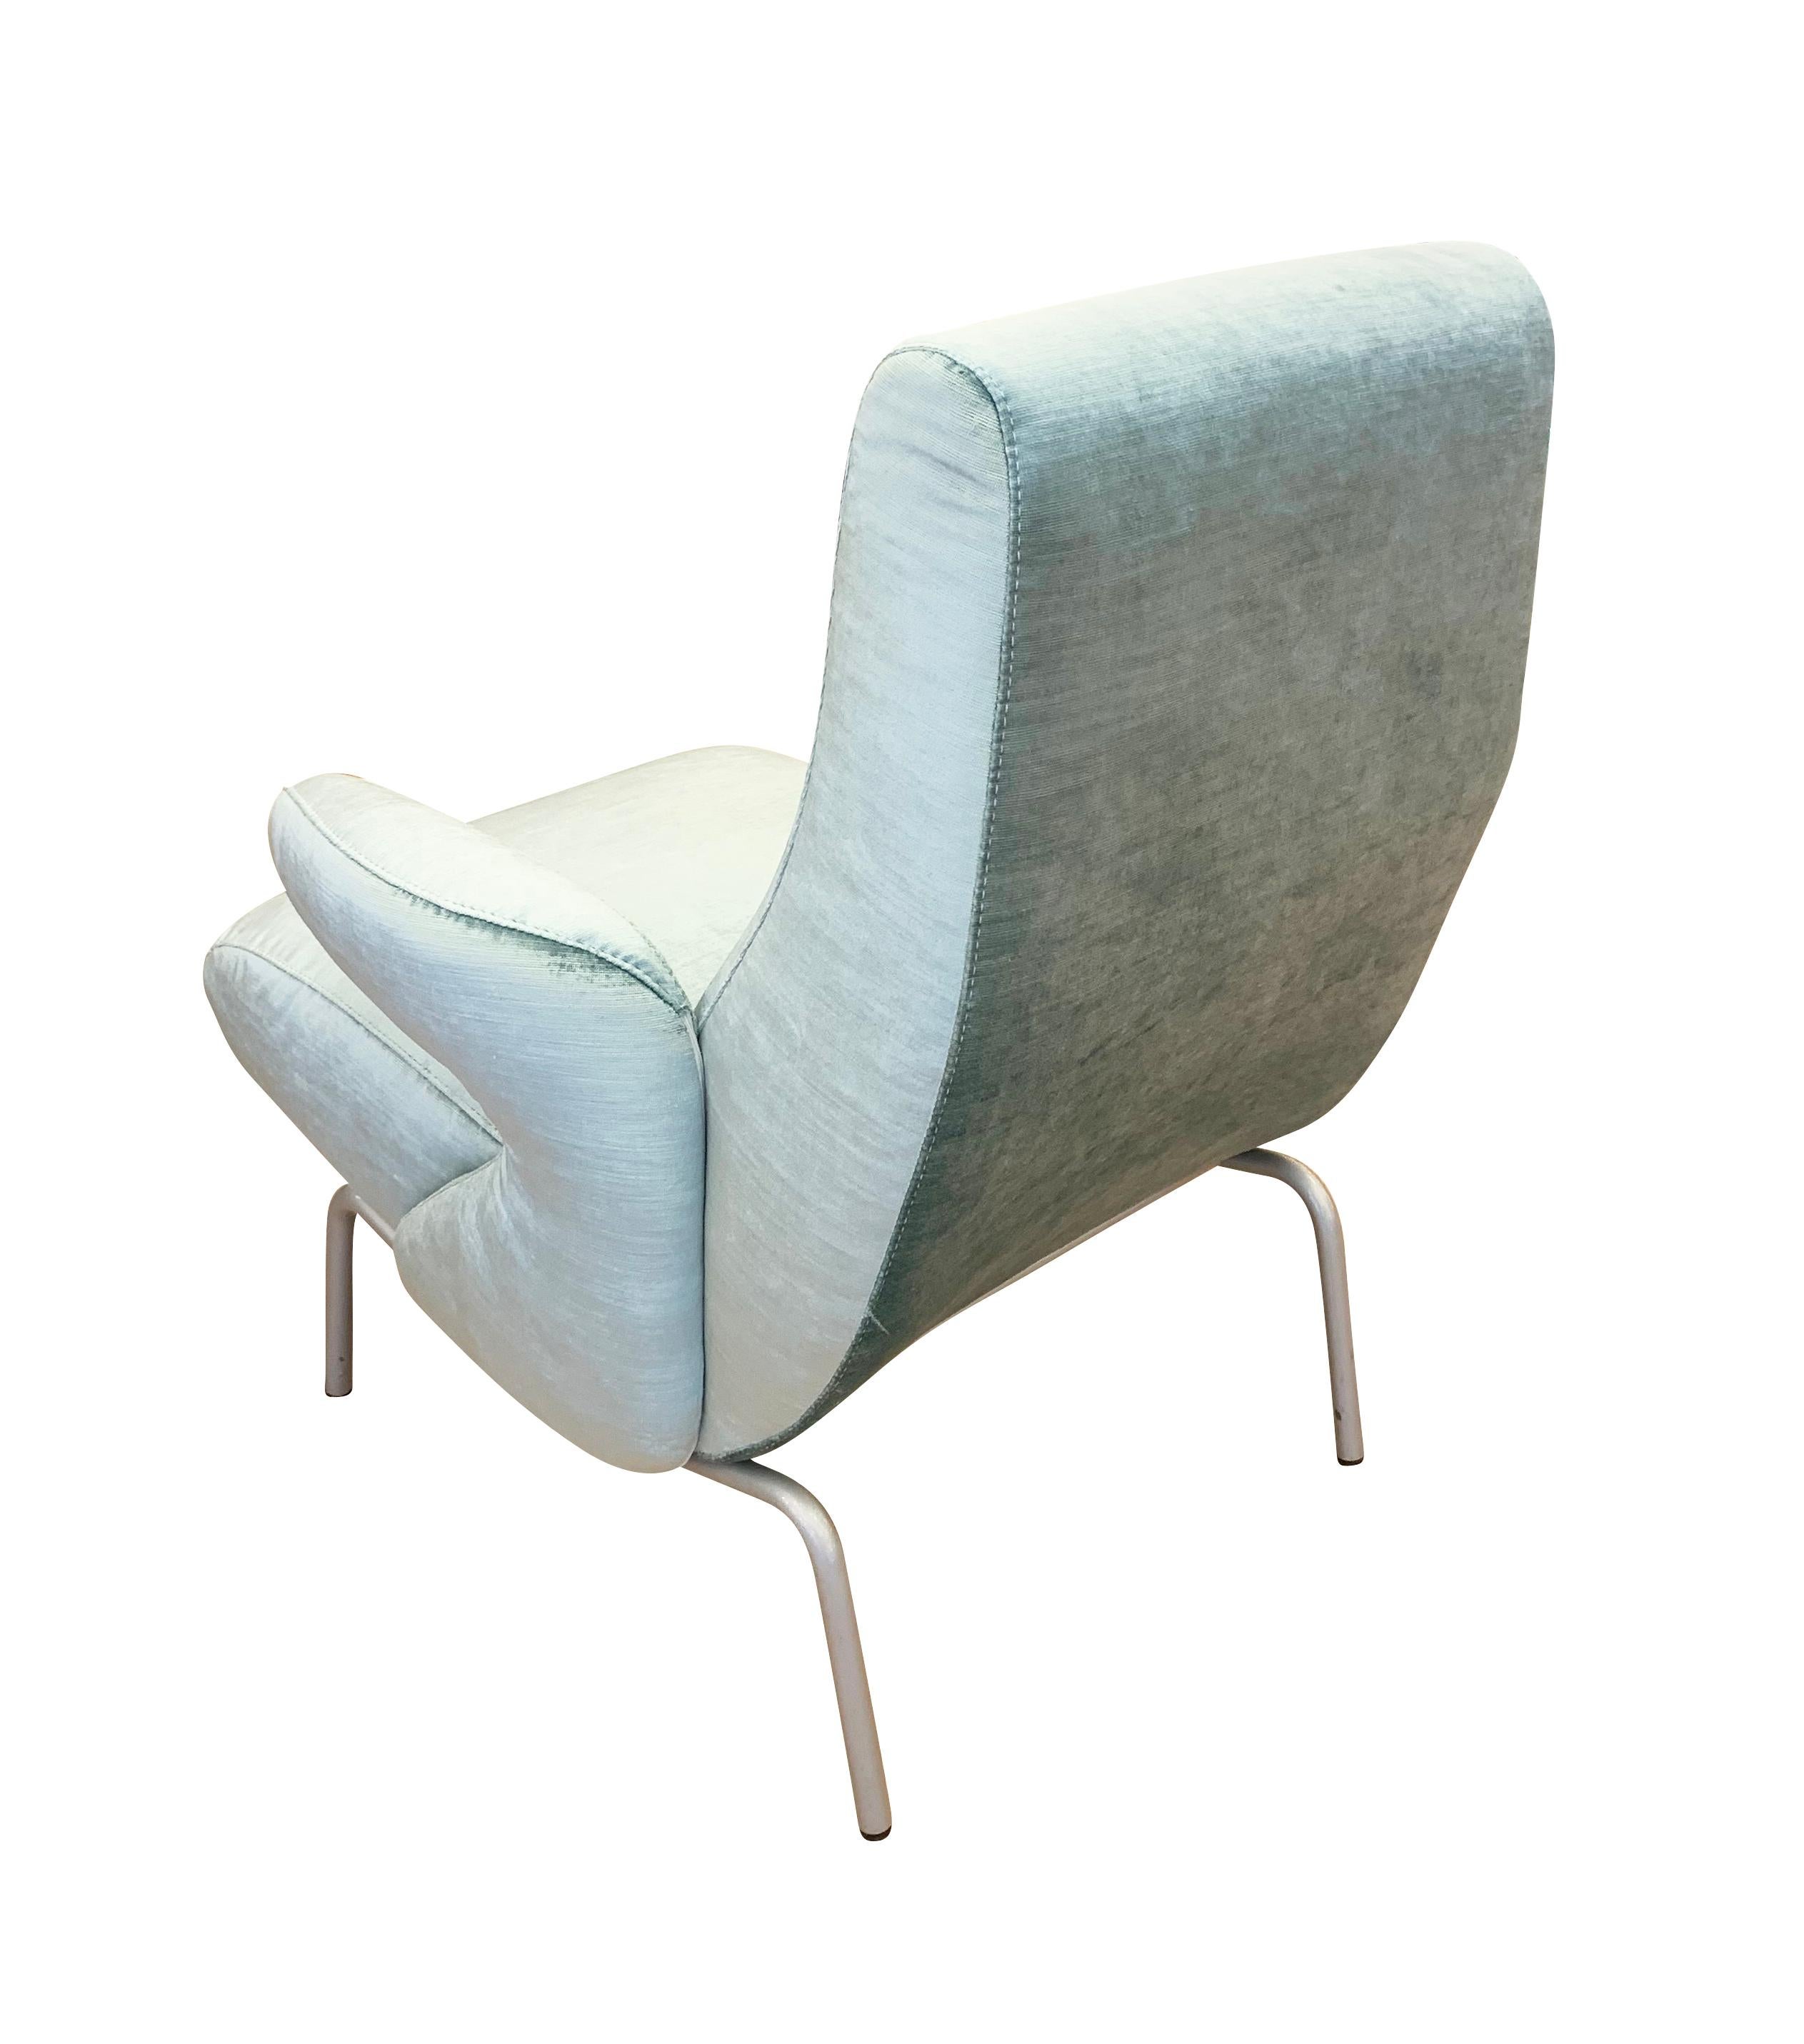 Le fauteuil club Dolphin est considéré comme l'un des meilleurs fauteuils italiens des années 50. Il a été conçu en 1954 par Ernesto Carboni pour Arflex, l'une des entreprises italiennes de sièges les plus innovantes de l'époque.

Condit : Excellent